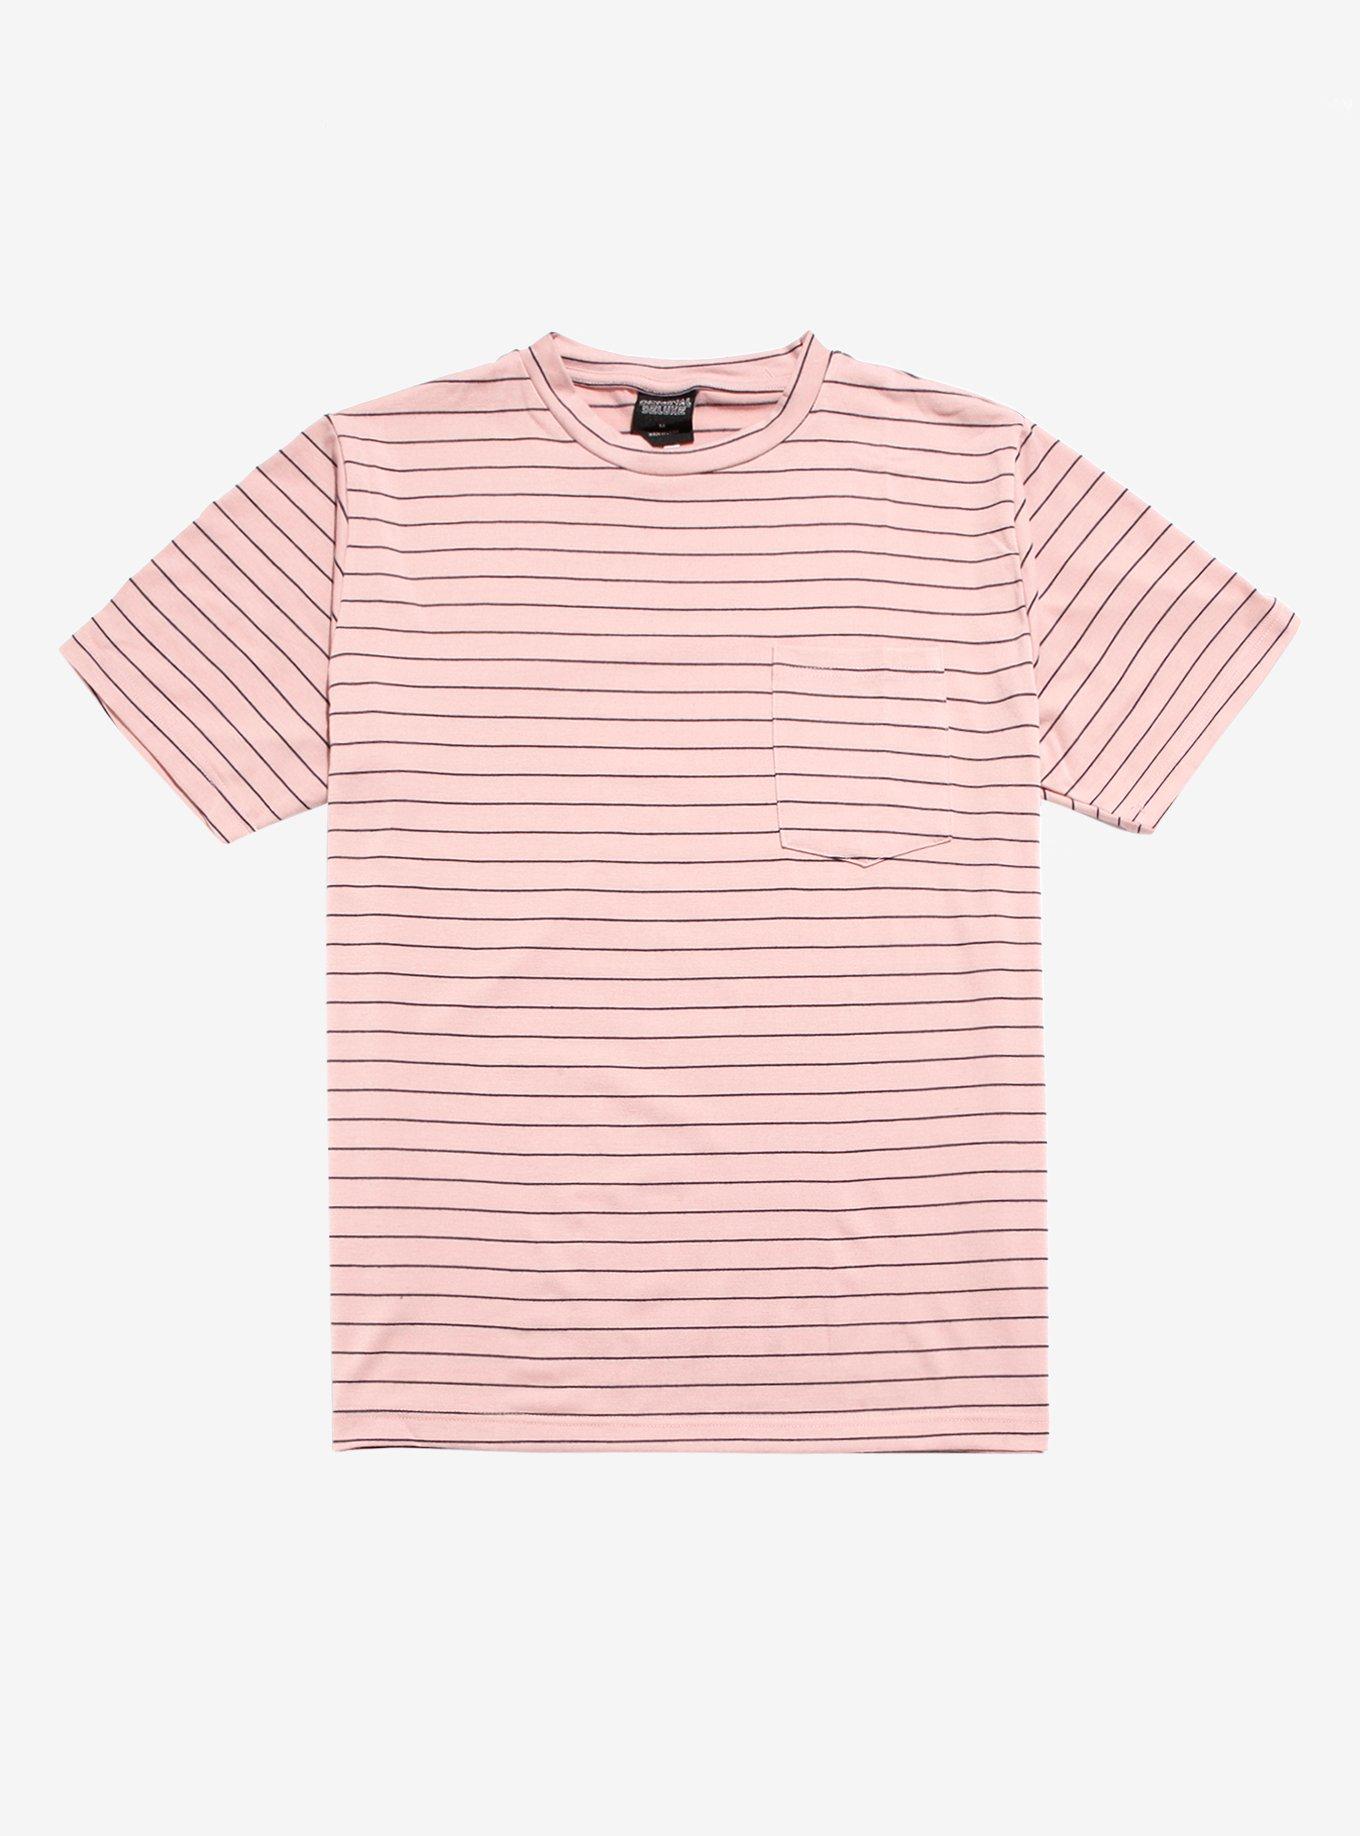 Pink & Black Striped Pocket T-Shirt, PINK, hi-res